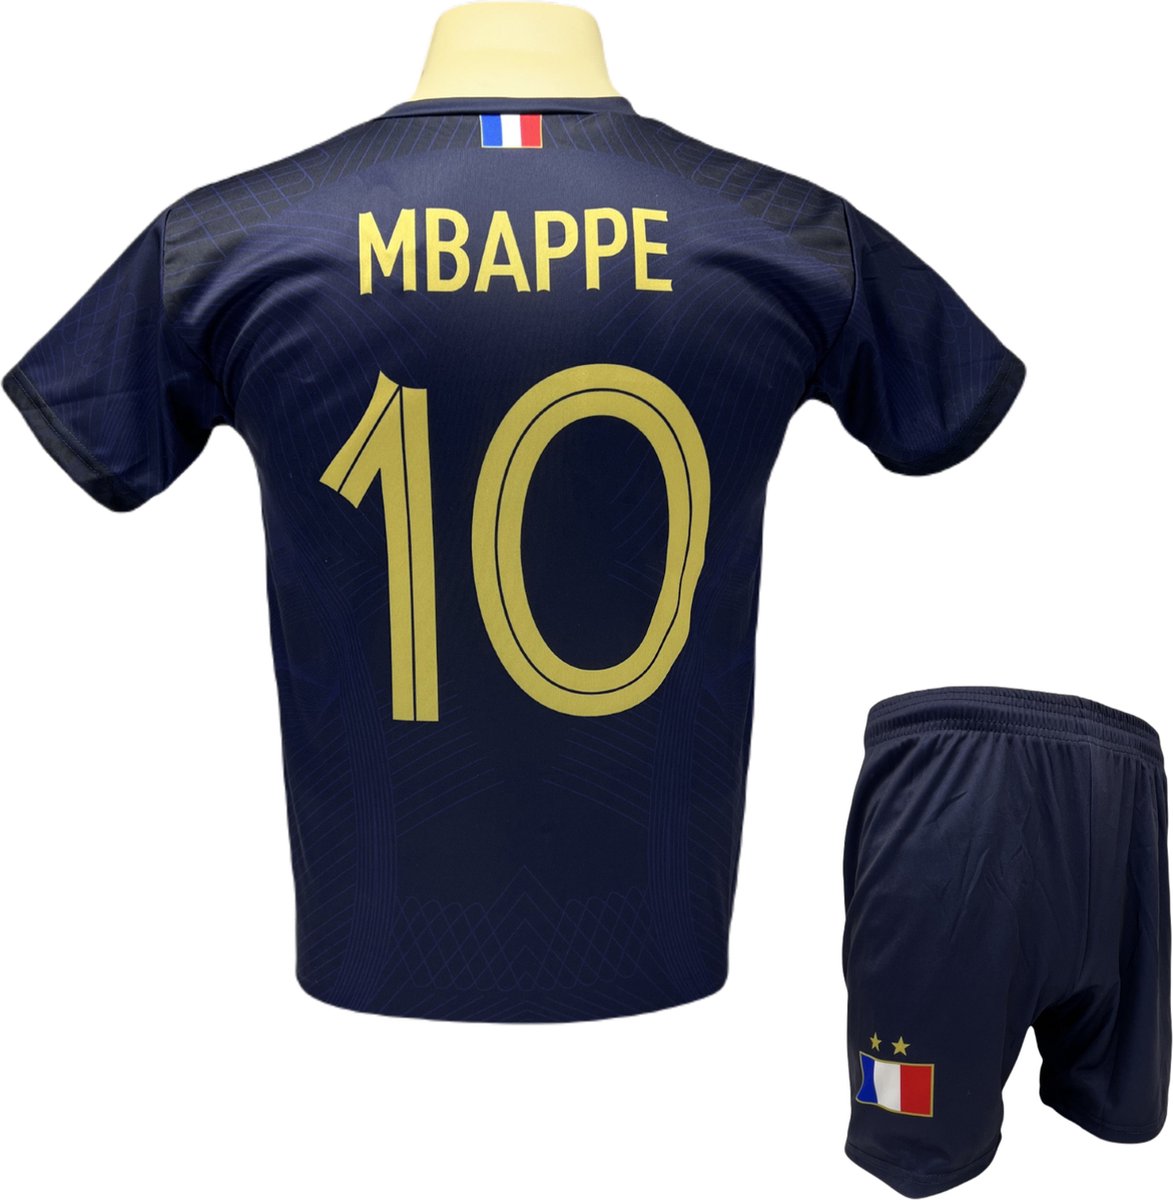 Kylian Mbappé - Frankrijk Thuis Tenue - voetbaltenue - Voetbalshirt + Broek Set - Blauw - Maat: 176 (M)